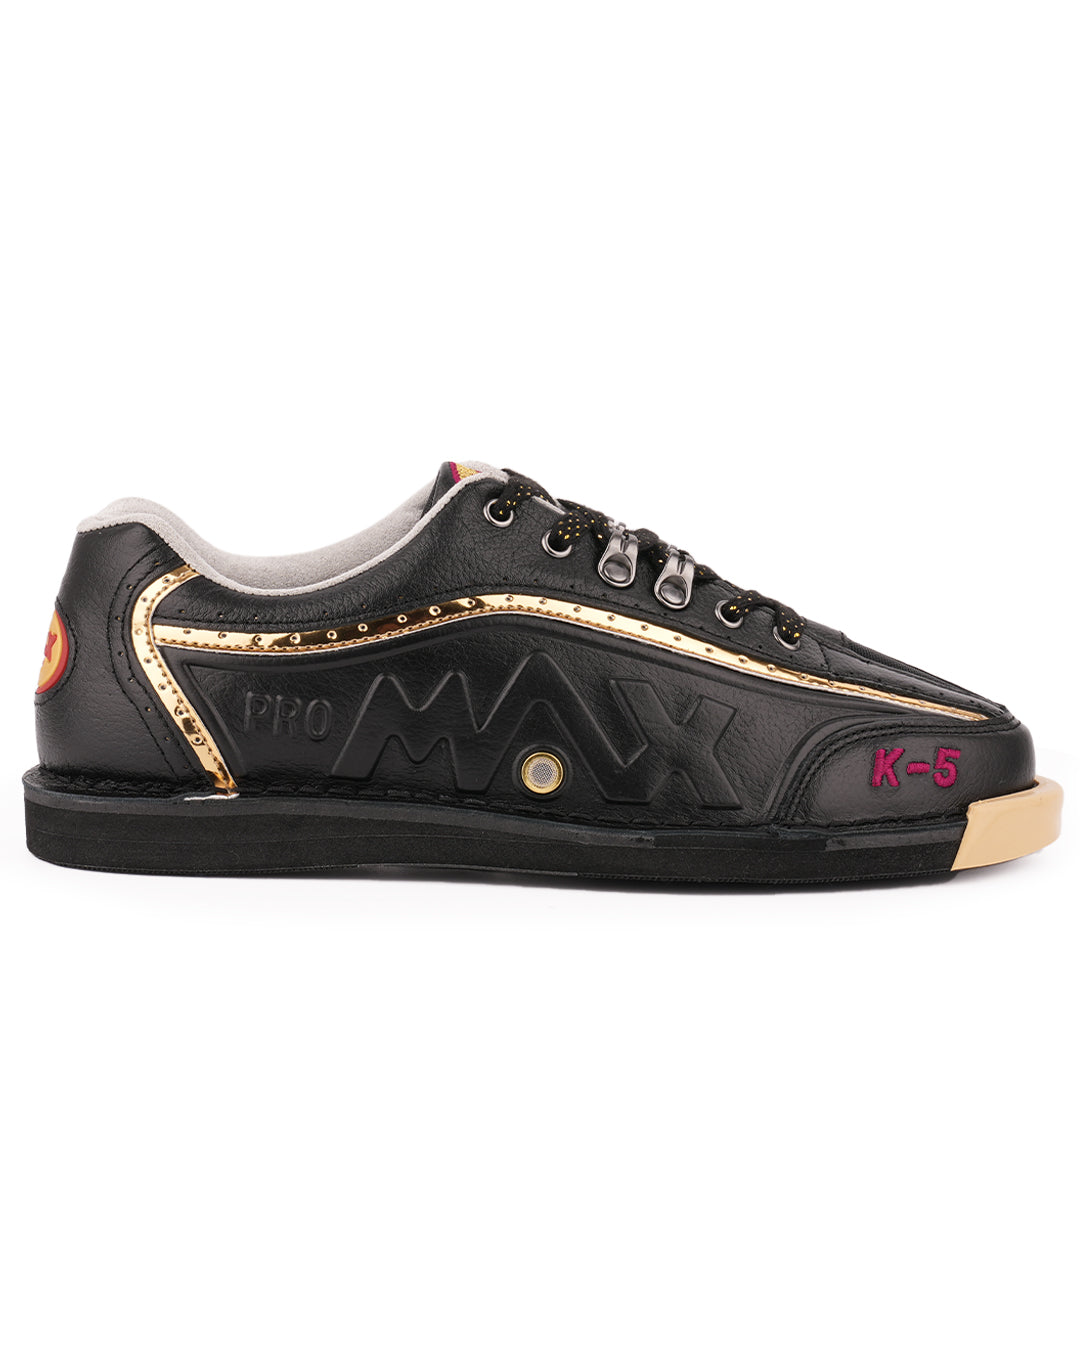 maxwelter k-5 k5 bowling shoes kangaroo leather black premium side